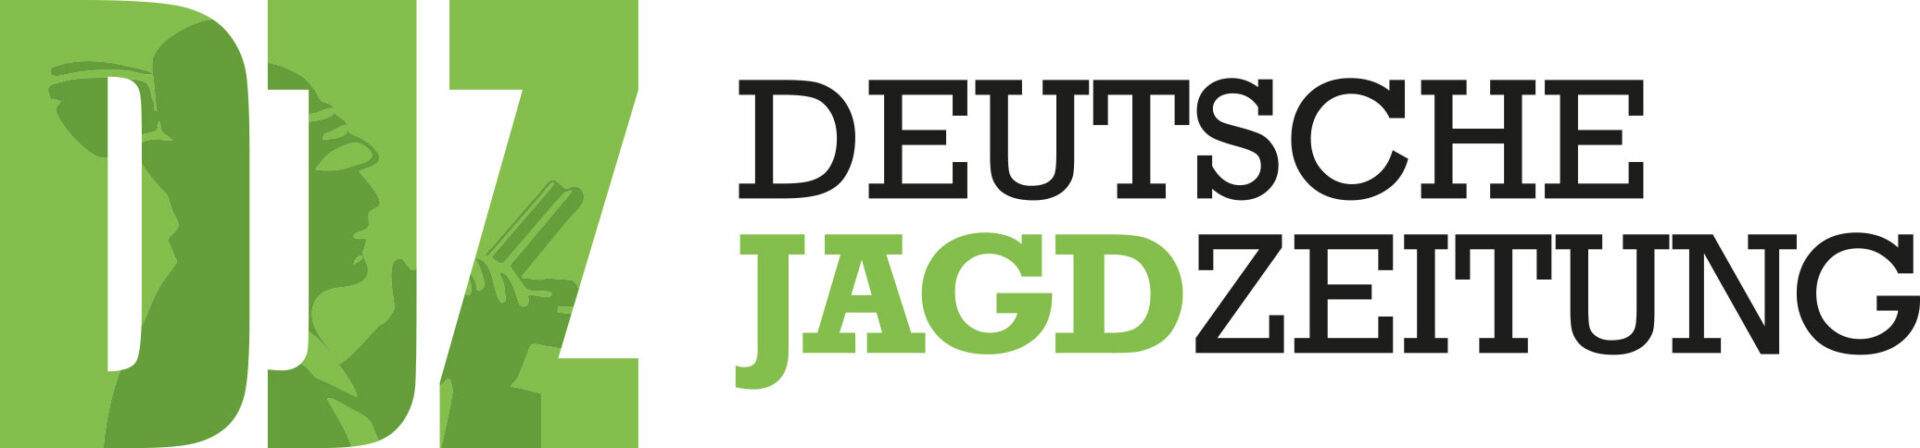 deutsche-jagdzeitung-logo.png (205 KB)